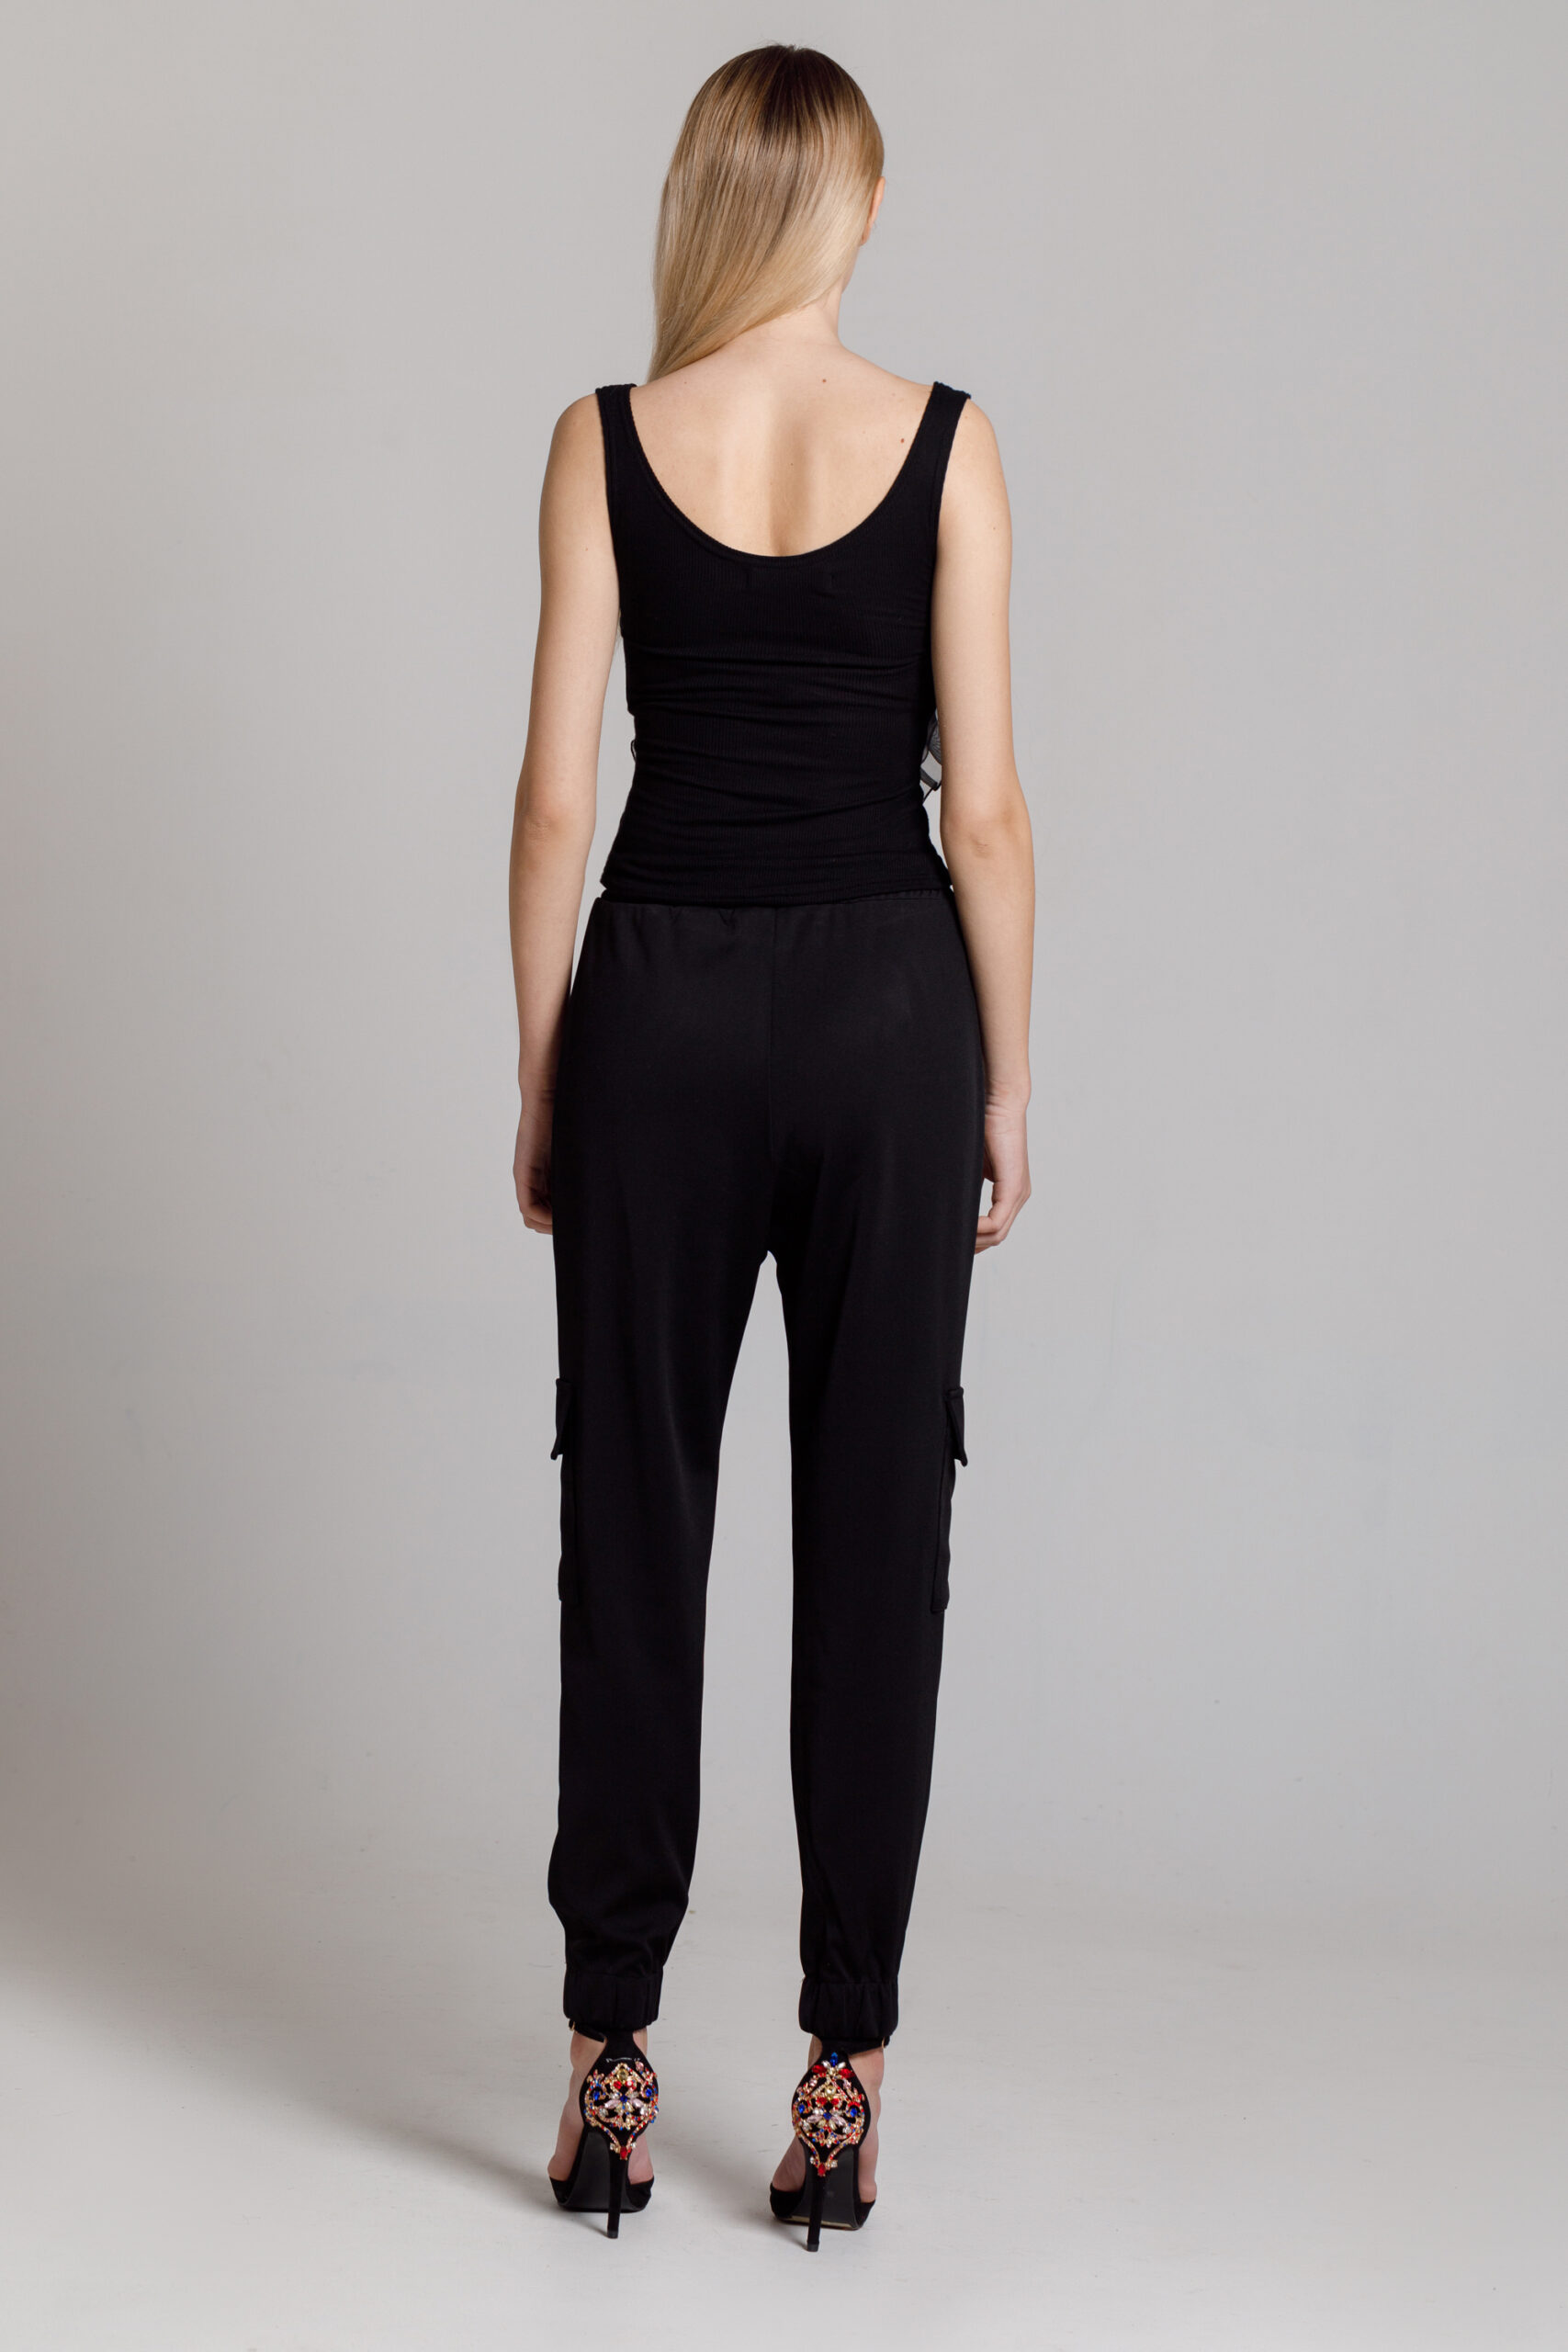 Pantalon VAN negru cu buzunare aplicate. Materiale naturale, design unicat, cu broderie si aplicatii handmade